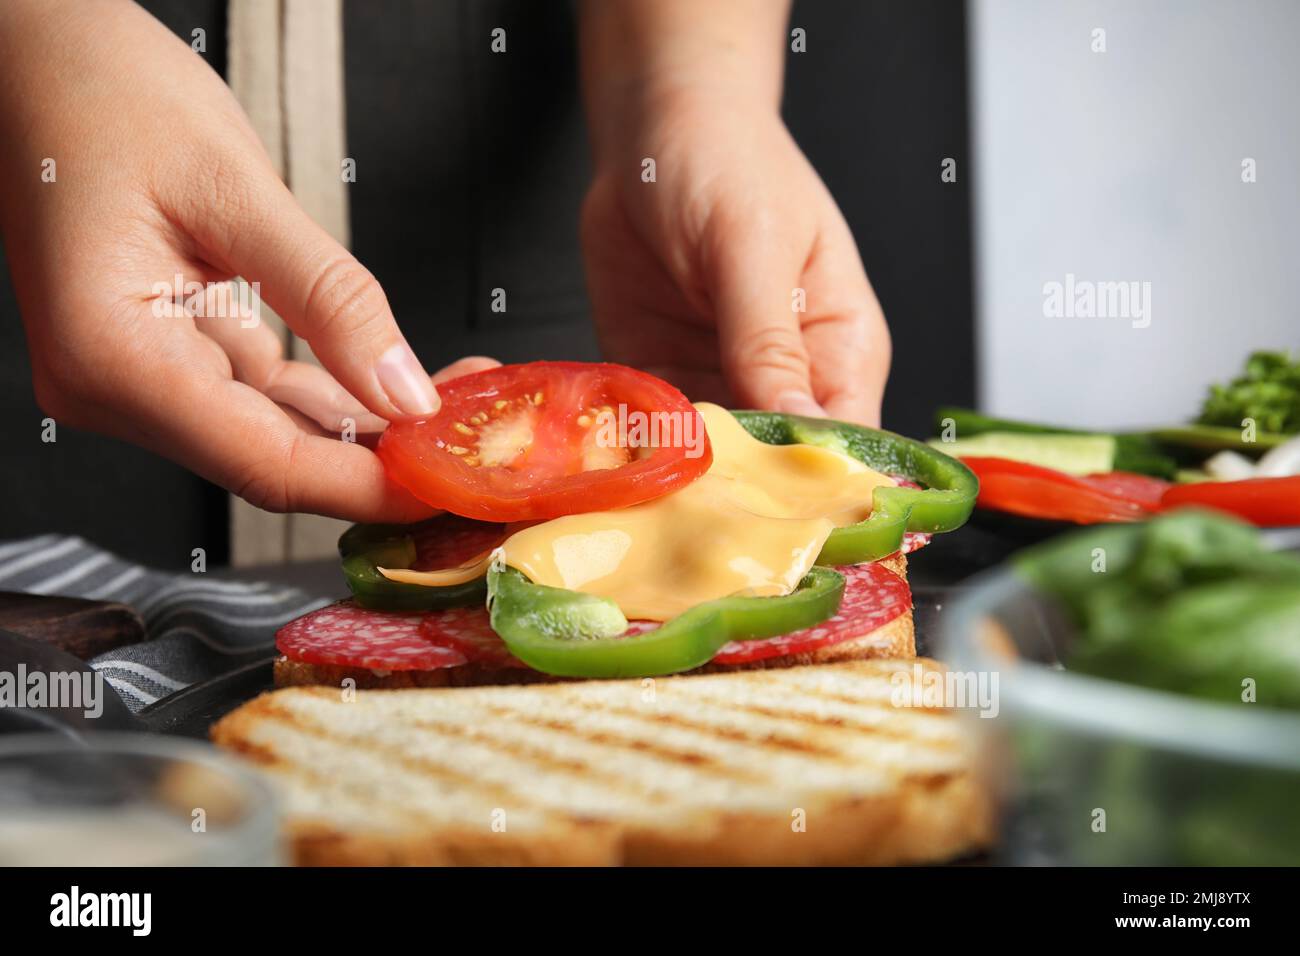 Frau, die Tomaten zum Sandwich am Tisch hinzufügt, Nahaufnahme Stockfoto